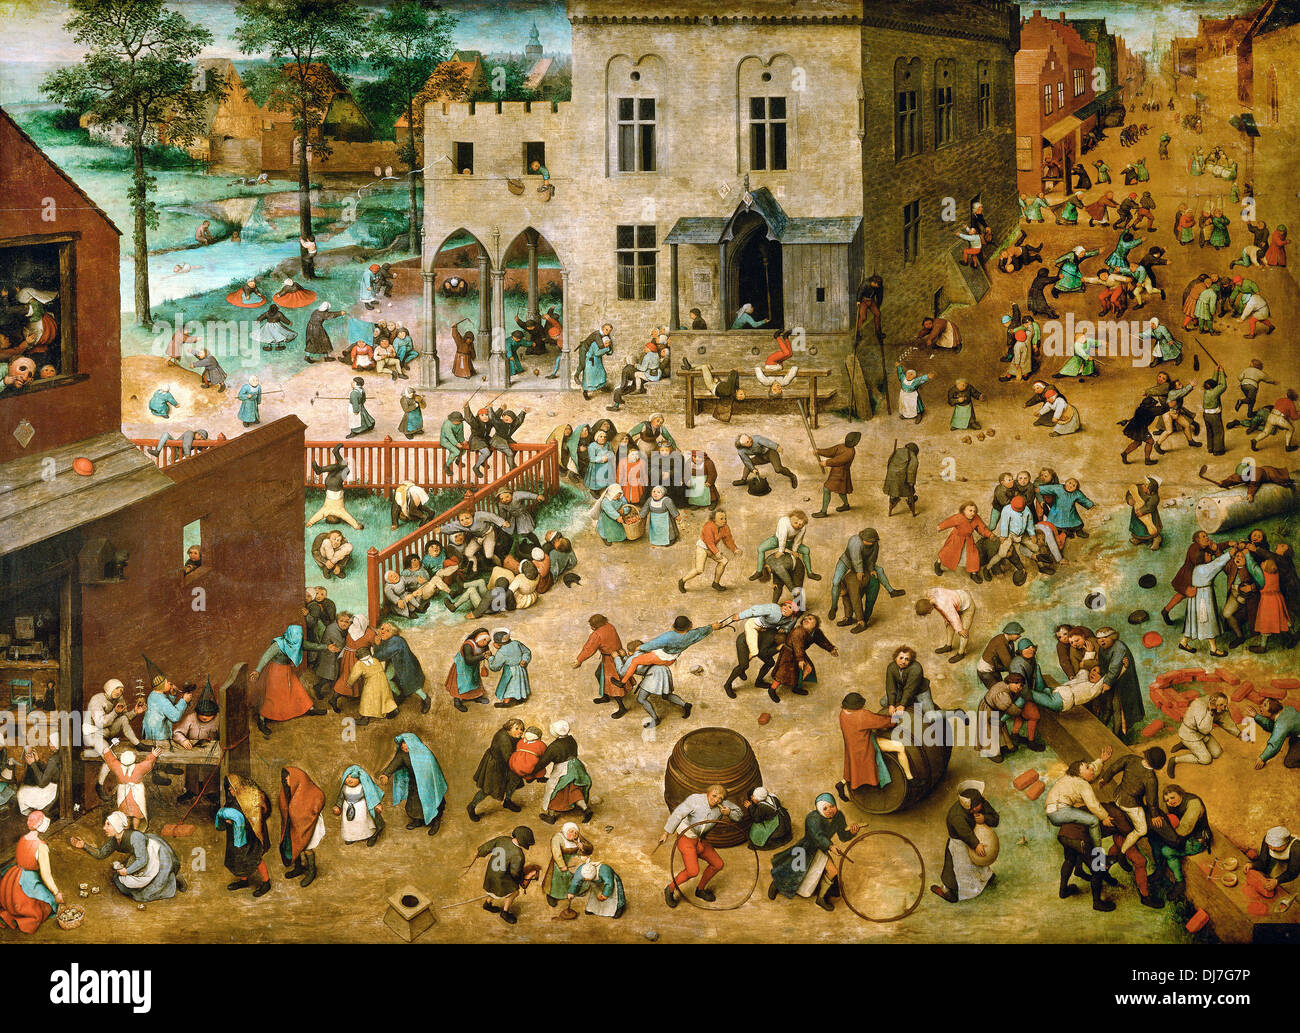 Pieter Brueghel the Elder, Children’s Games 1560. Oil on panel. Kunsthistorisches Museum, Vienna, Austria. Stock Photo